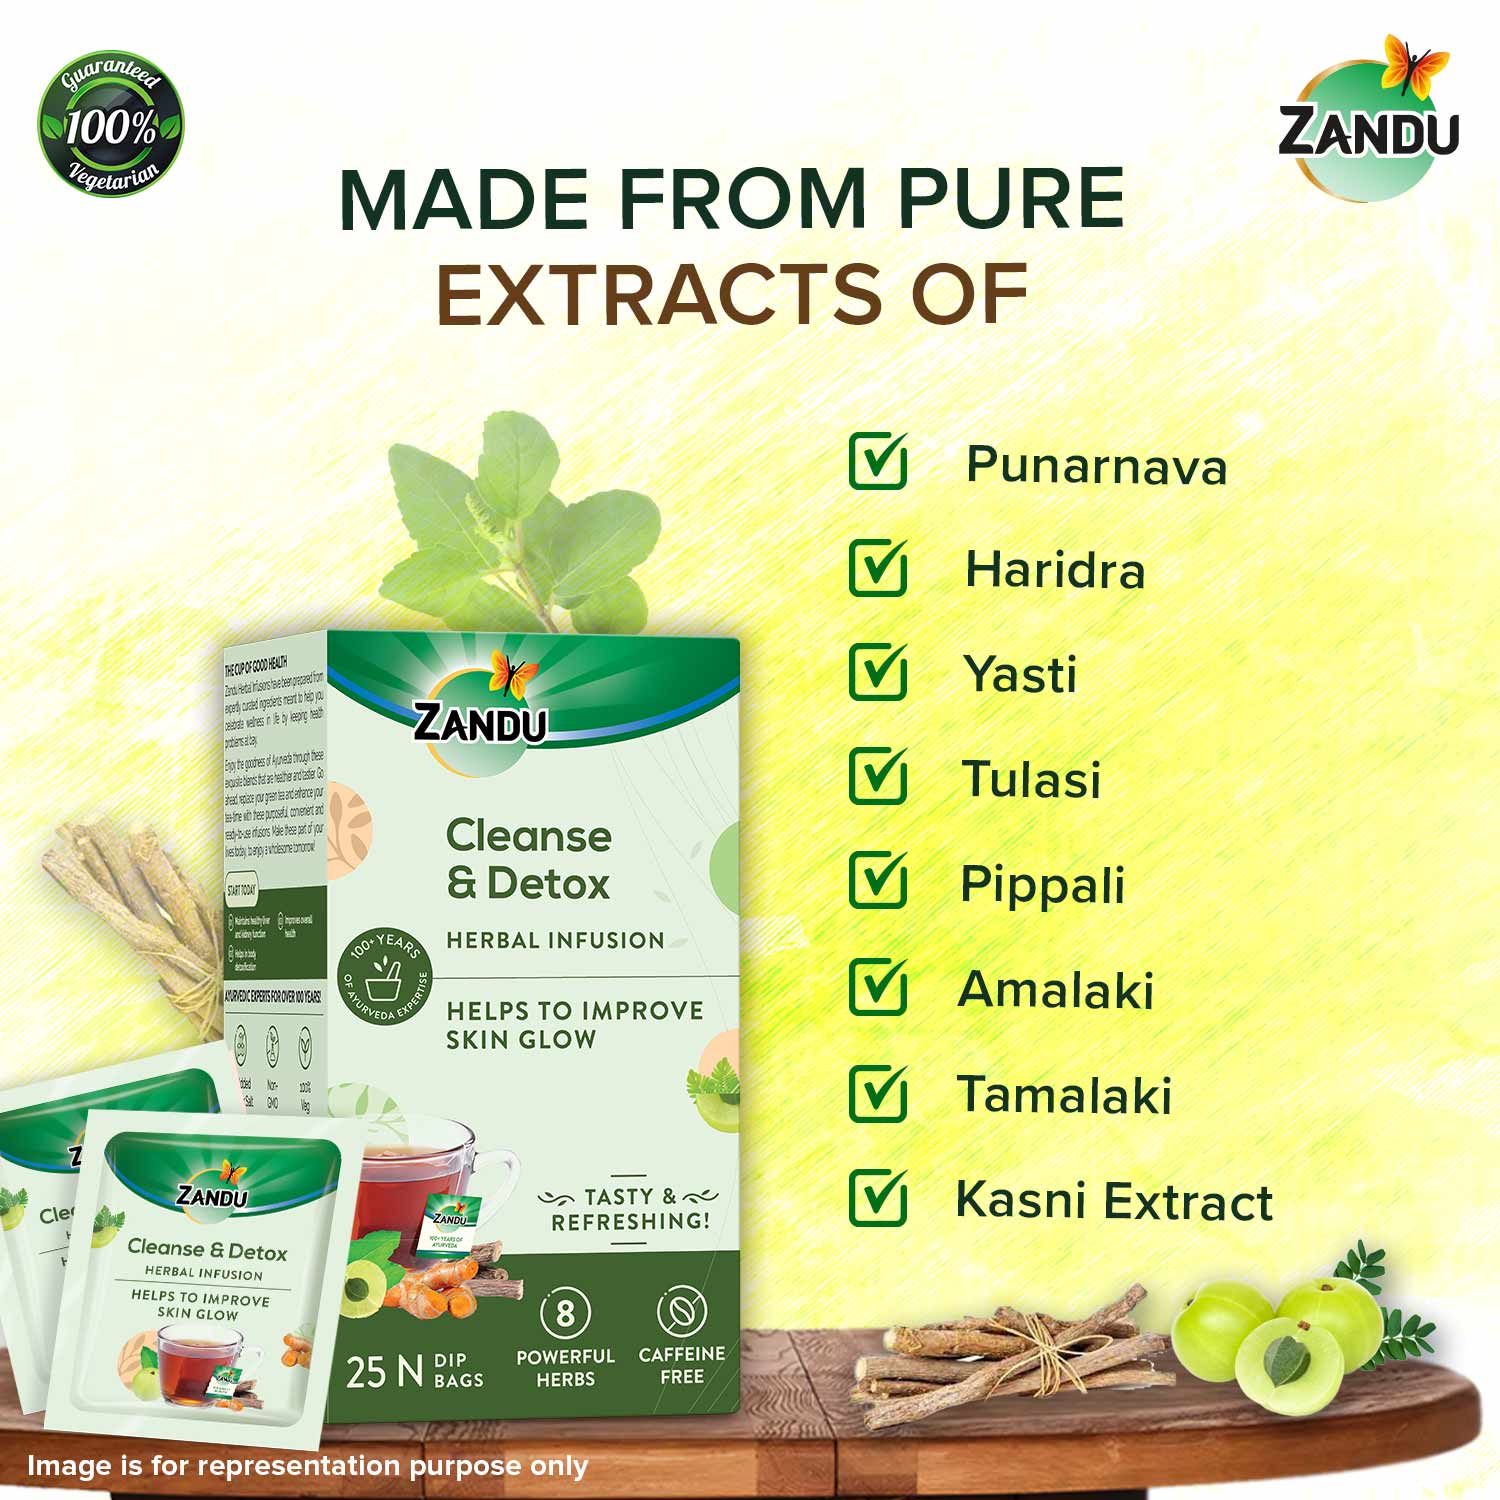 Zandu Cleanse & Detox Herbal Tea ingredients